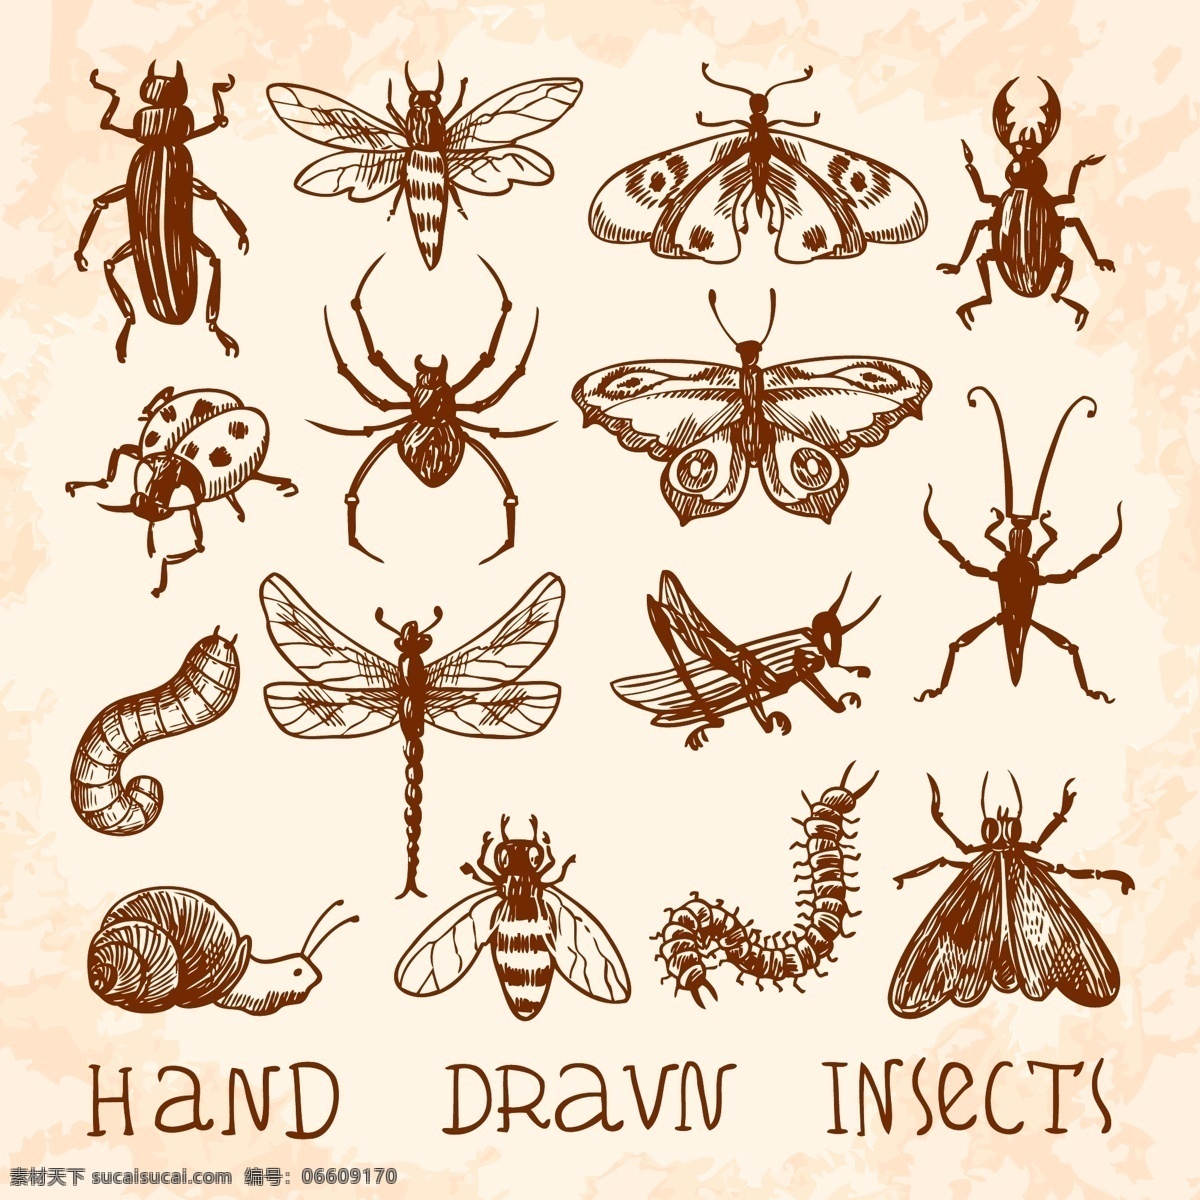 组 简约 昆虫 元素 可爱 卡通 卡哇伊 矢量素材 动物 小动物 创意设计 创意 生物元素 动物元素